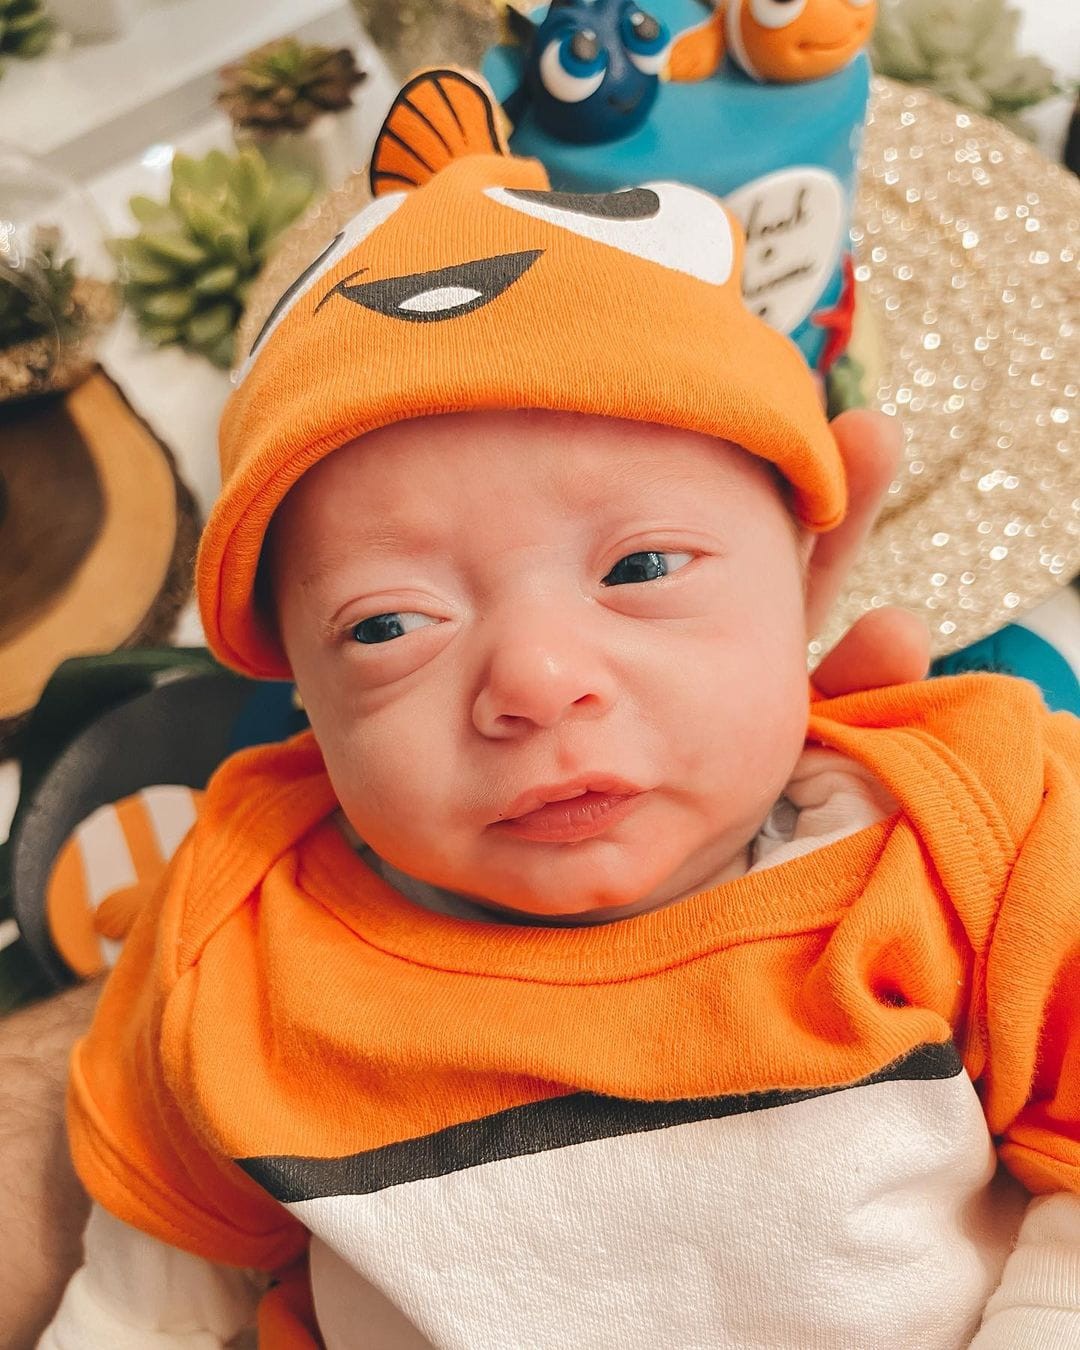 Bebês nasceram prematuros e precisaram ficar na UTI primeiros dias de vida (Foto: Reprodução/Instagram)